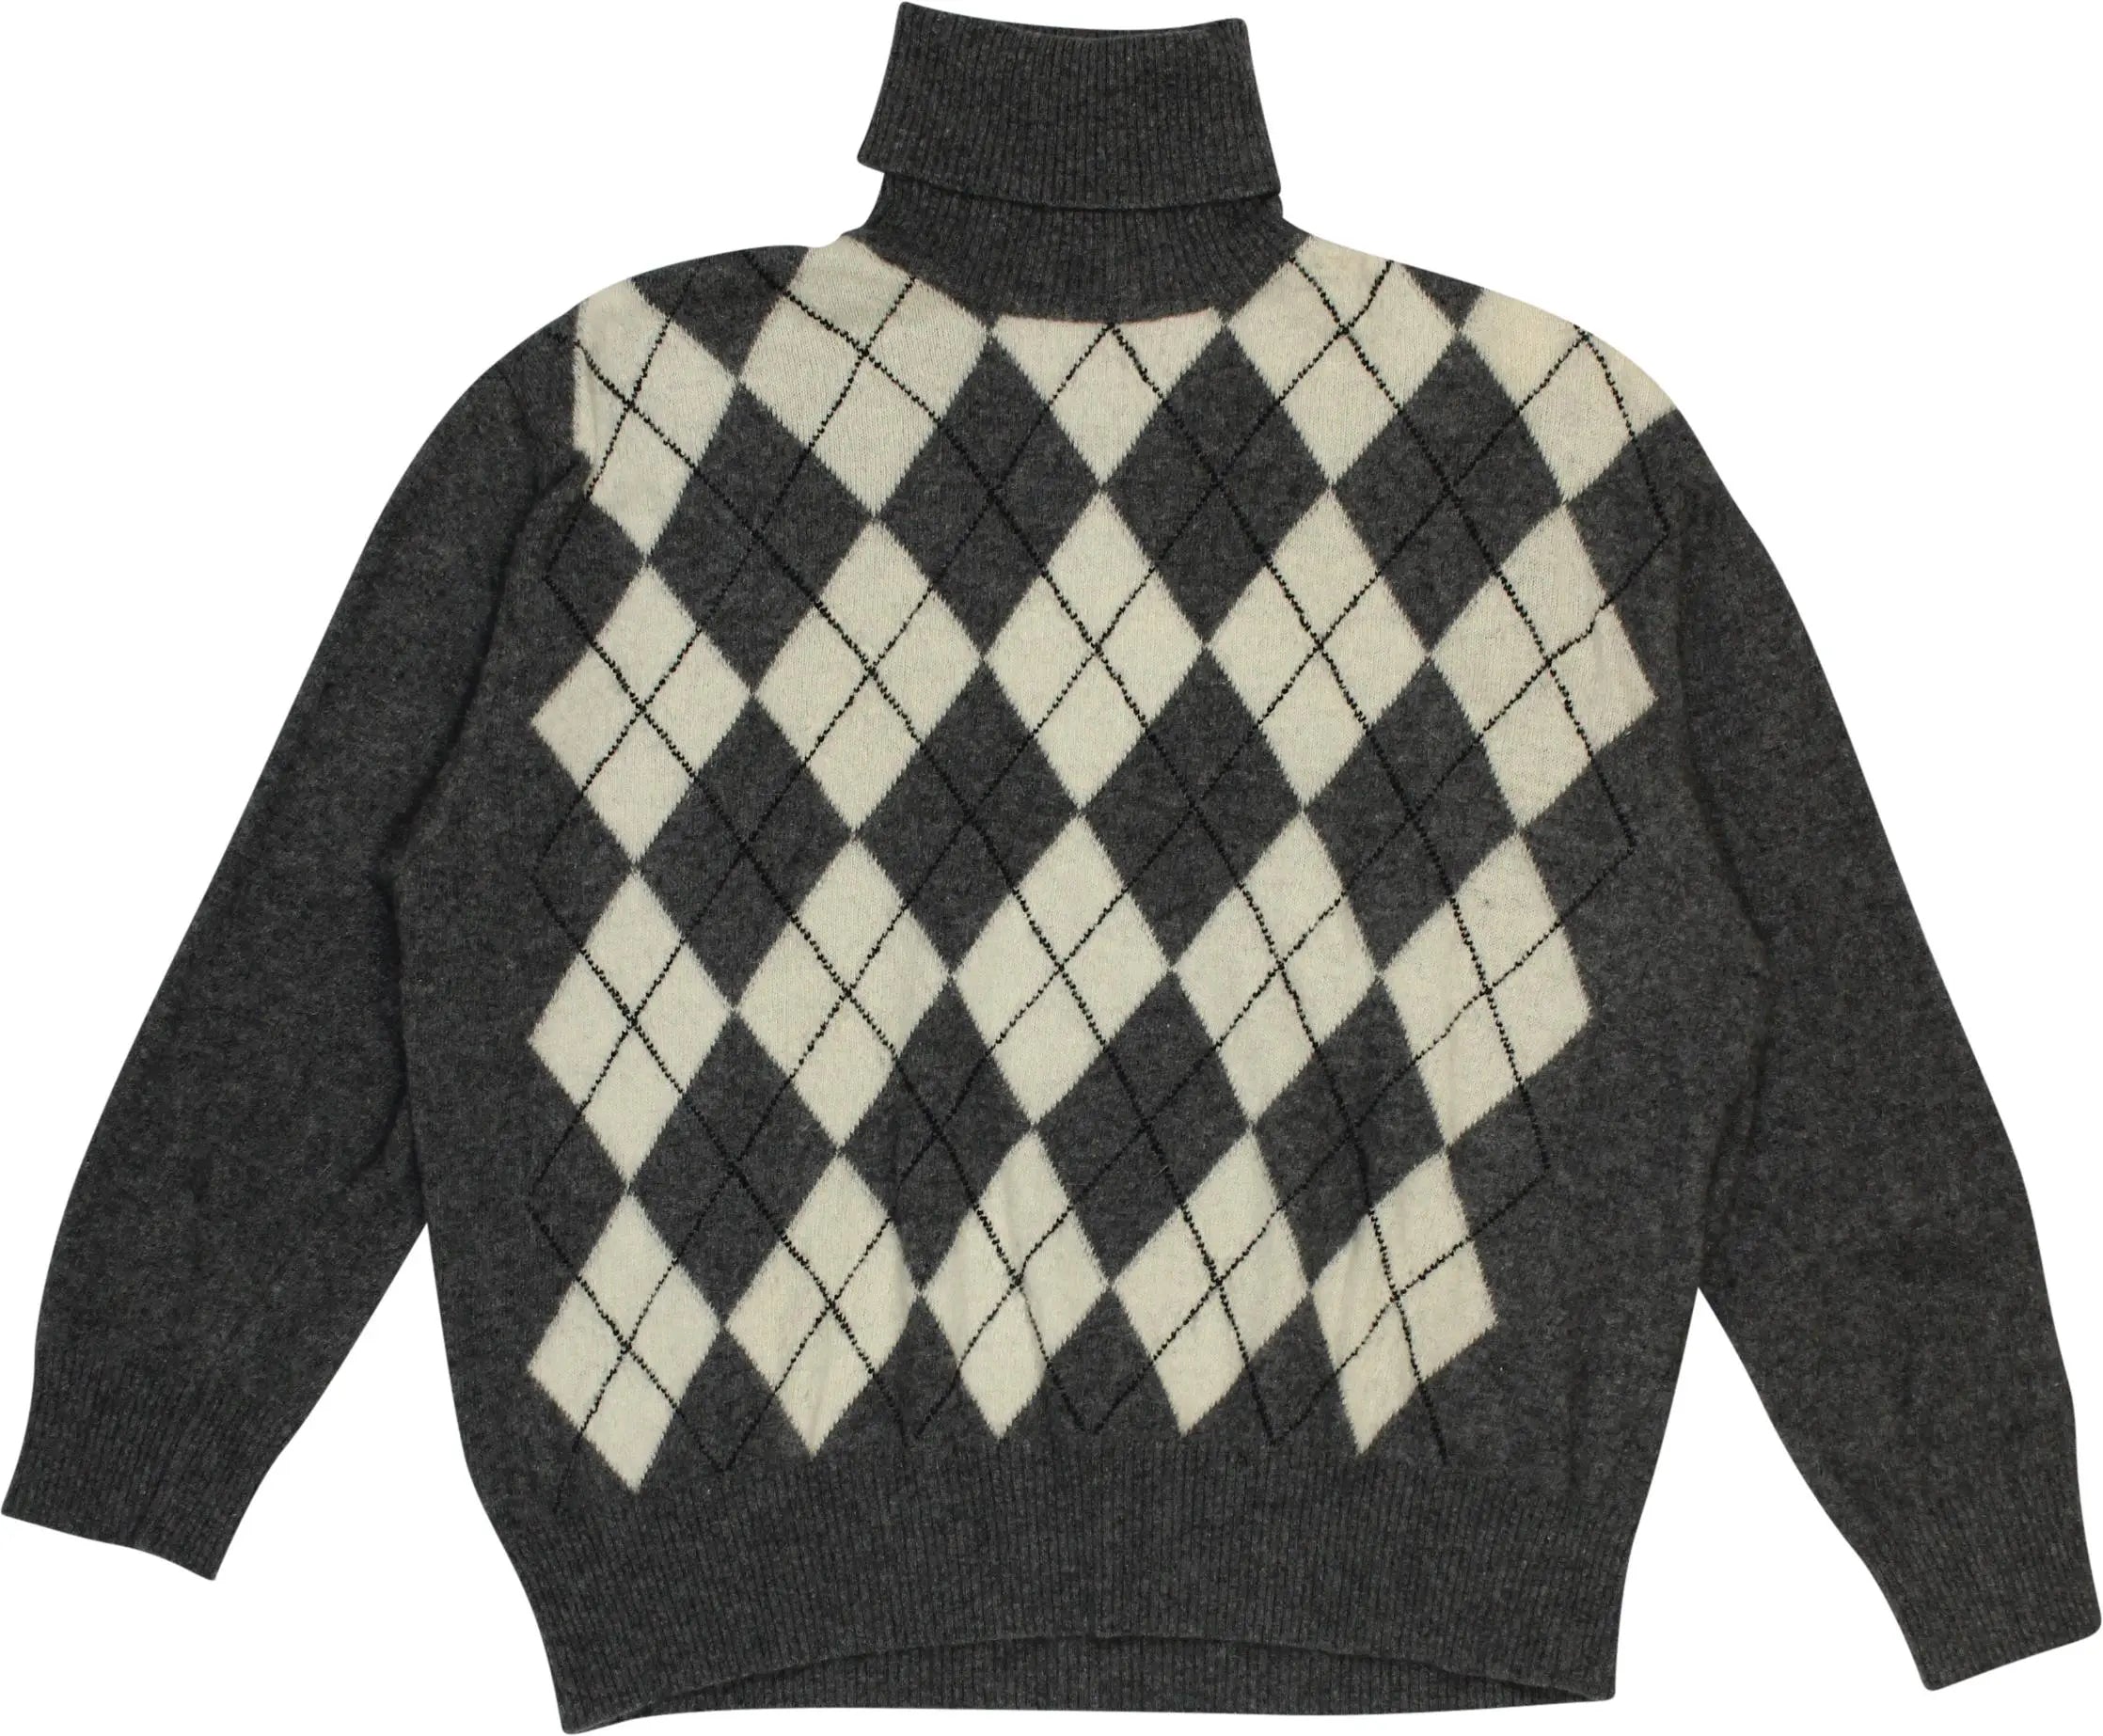 Christian Berg - Patterned Wool Blend Turtleneck Jumper- ThriftTale.com - Vintage and second handclothing